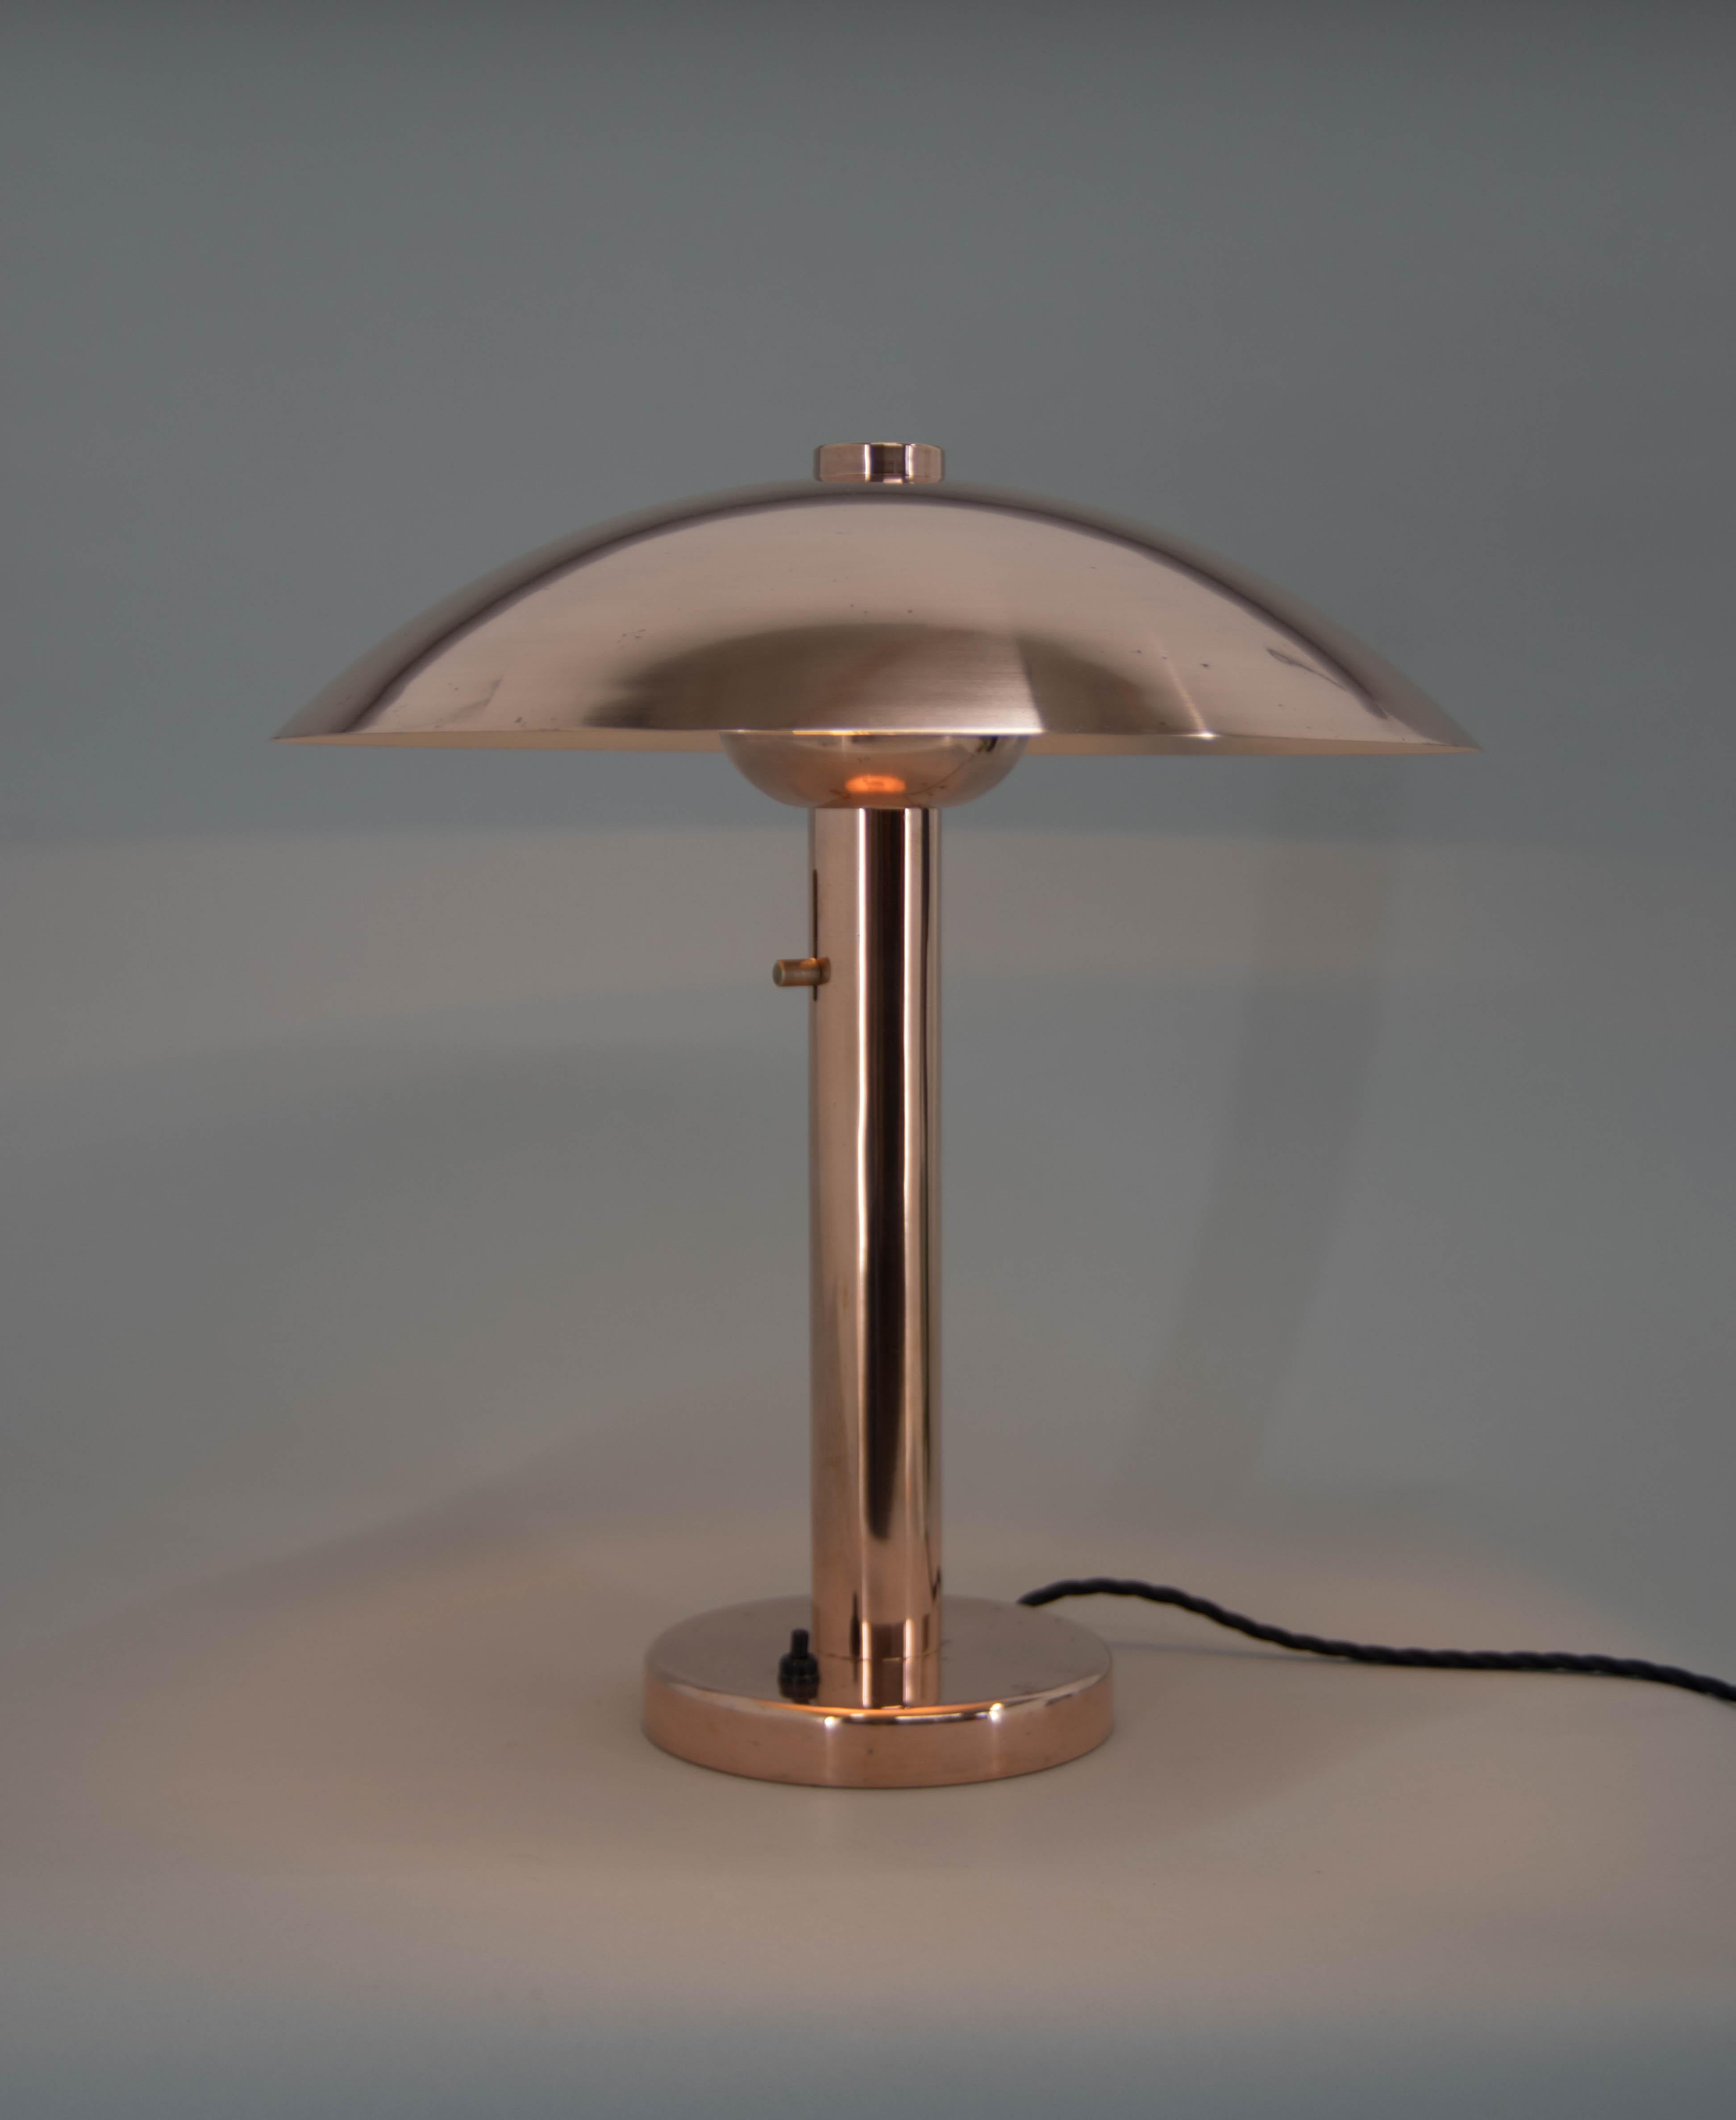 Grande version de la lampe de table champignon en cuivre. Hauteur réglable de l'ampoule.
Restauré : surface refinie, nouvelle peinture argentée sur une partie inférieure de l'abat-jour, recâblage.
1x60W, ampoule E25-E27.
Adaptateur pour prise